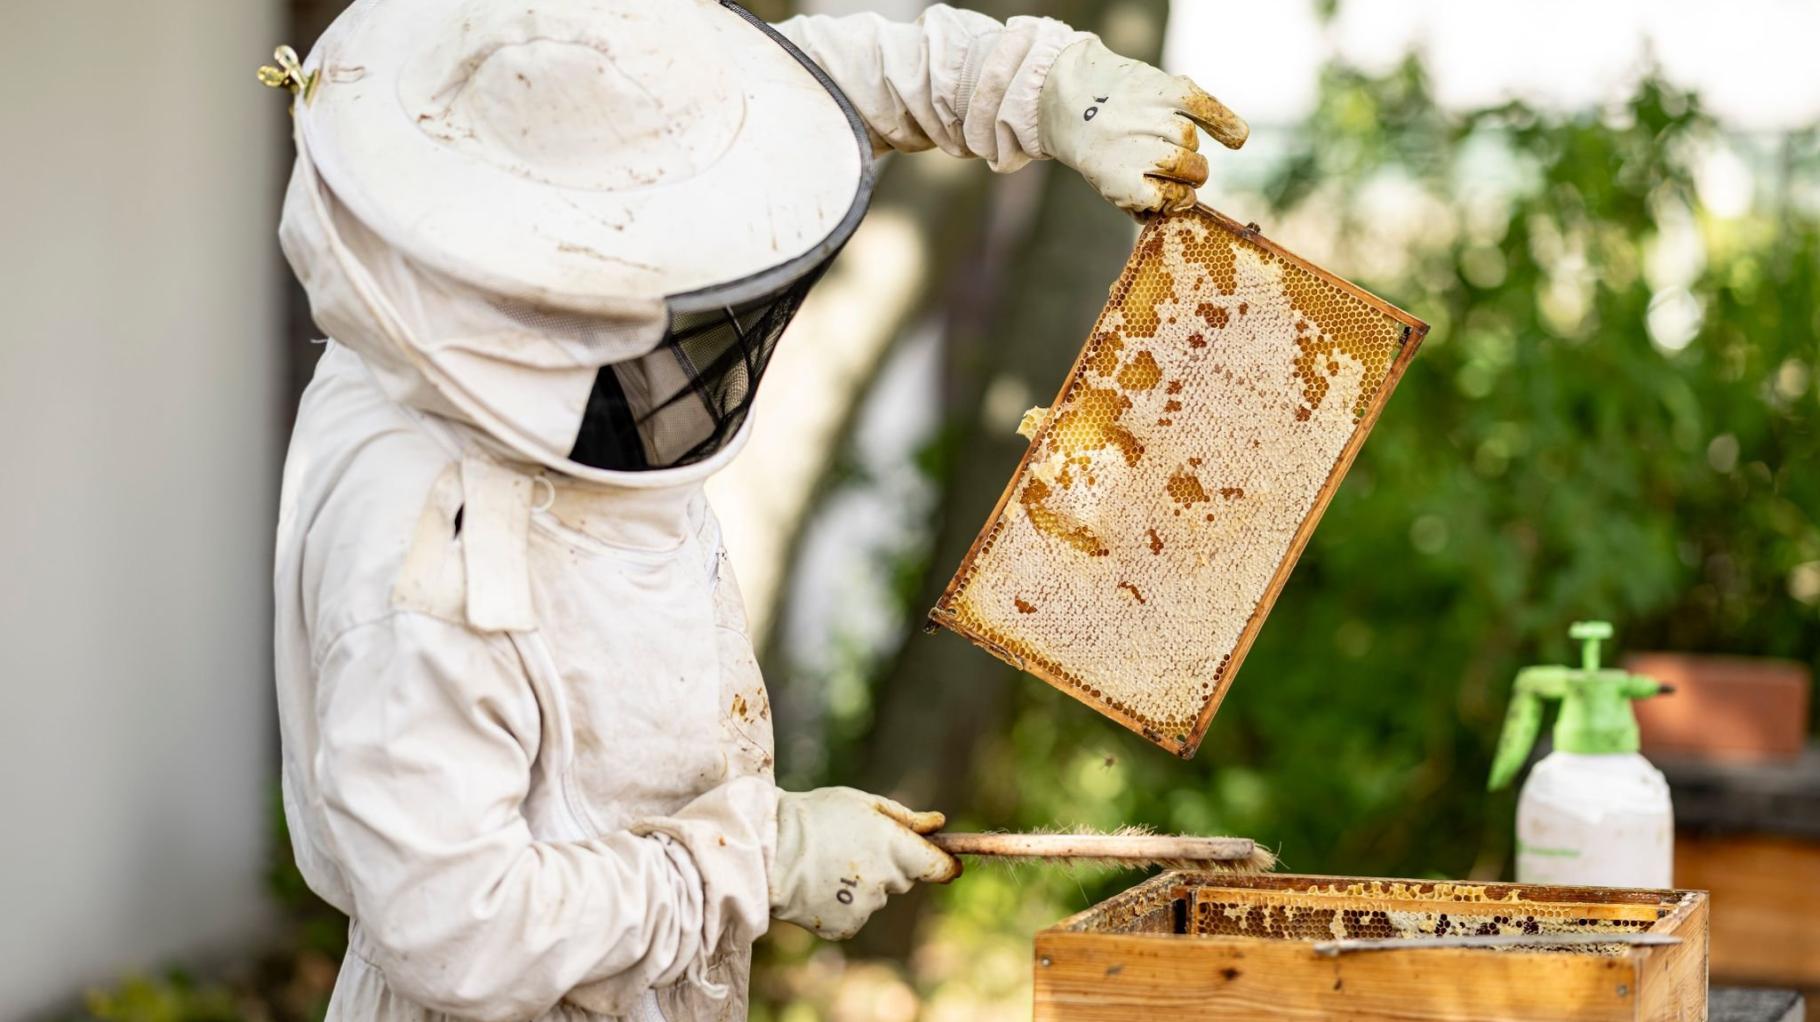 Imkerin aus Satow erklärt die Bienenhaltung